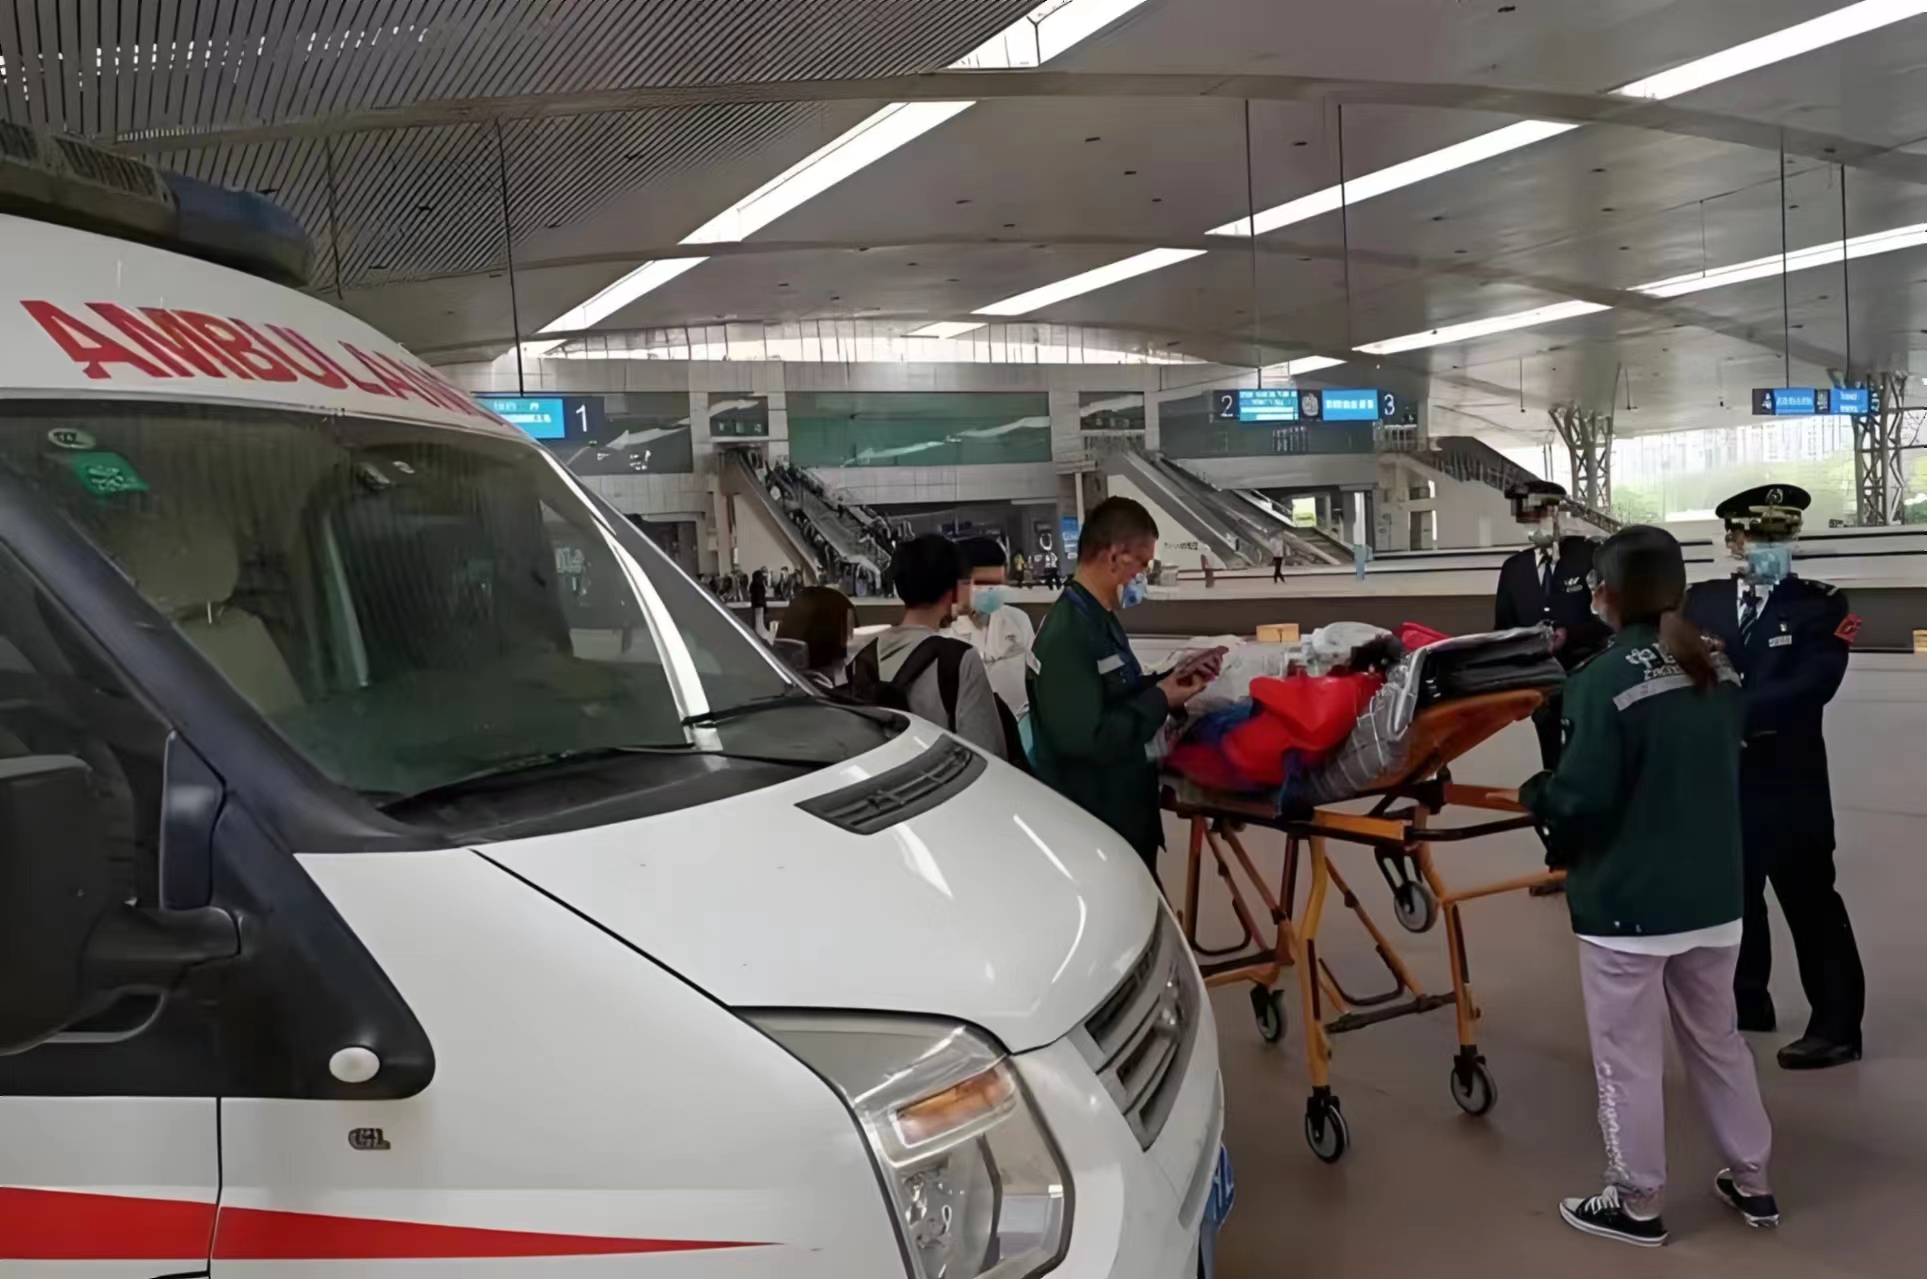 宜宾-救护车转运病人-私人救护车出租-24小时服务热线